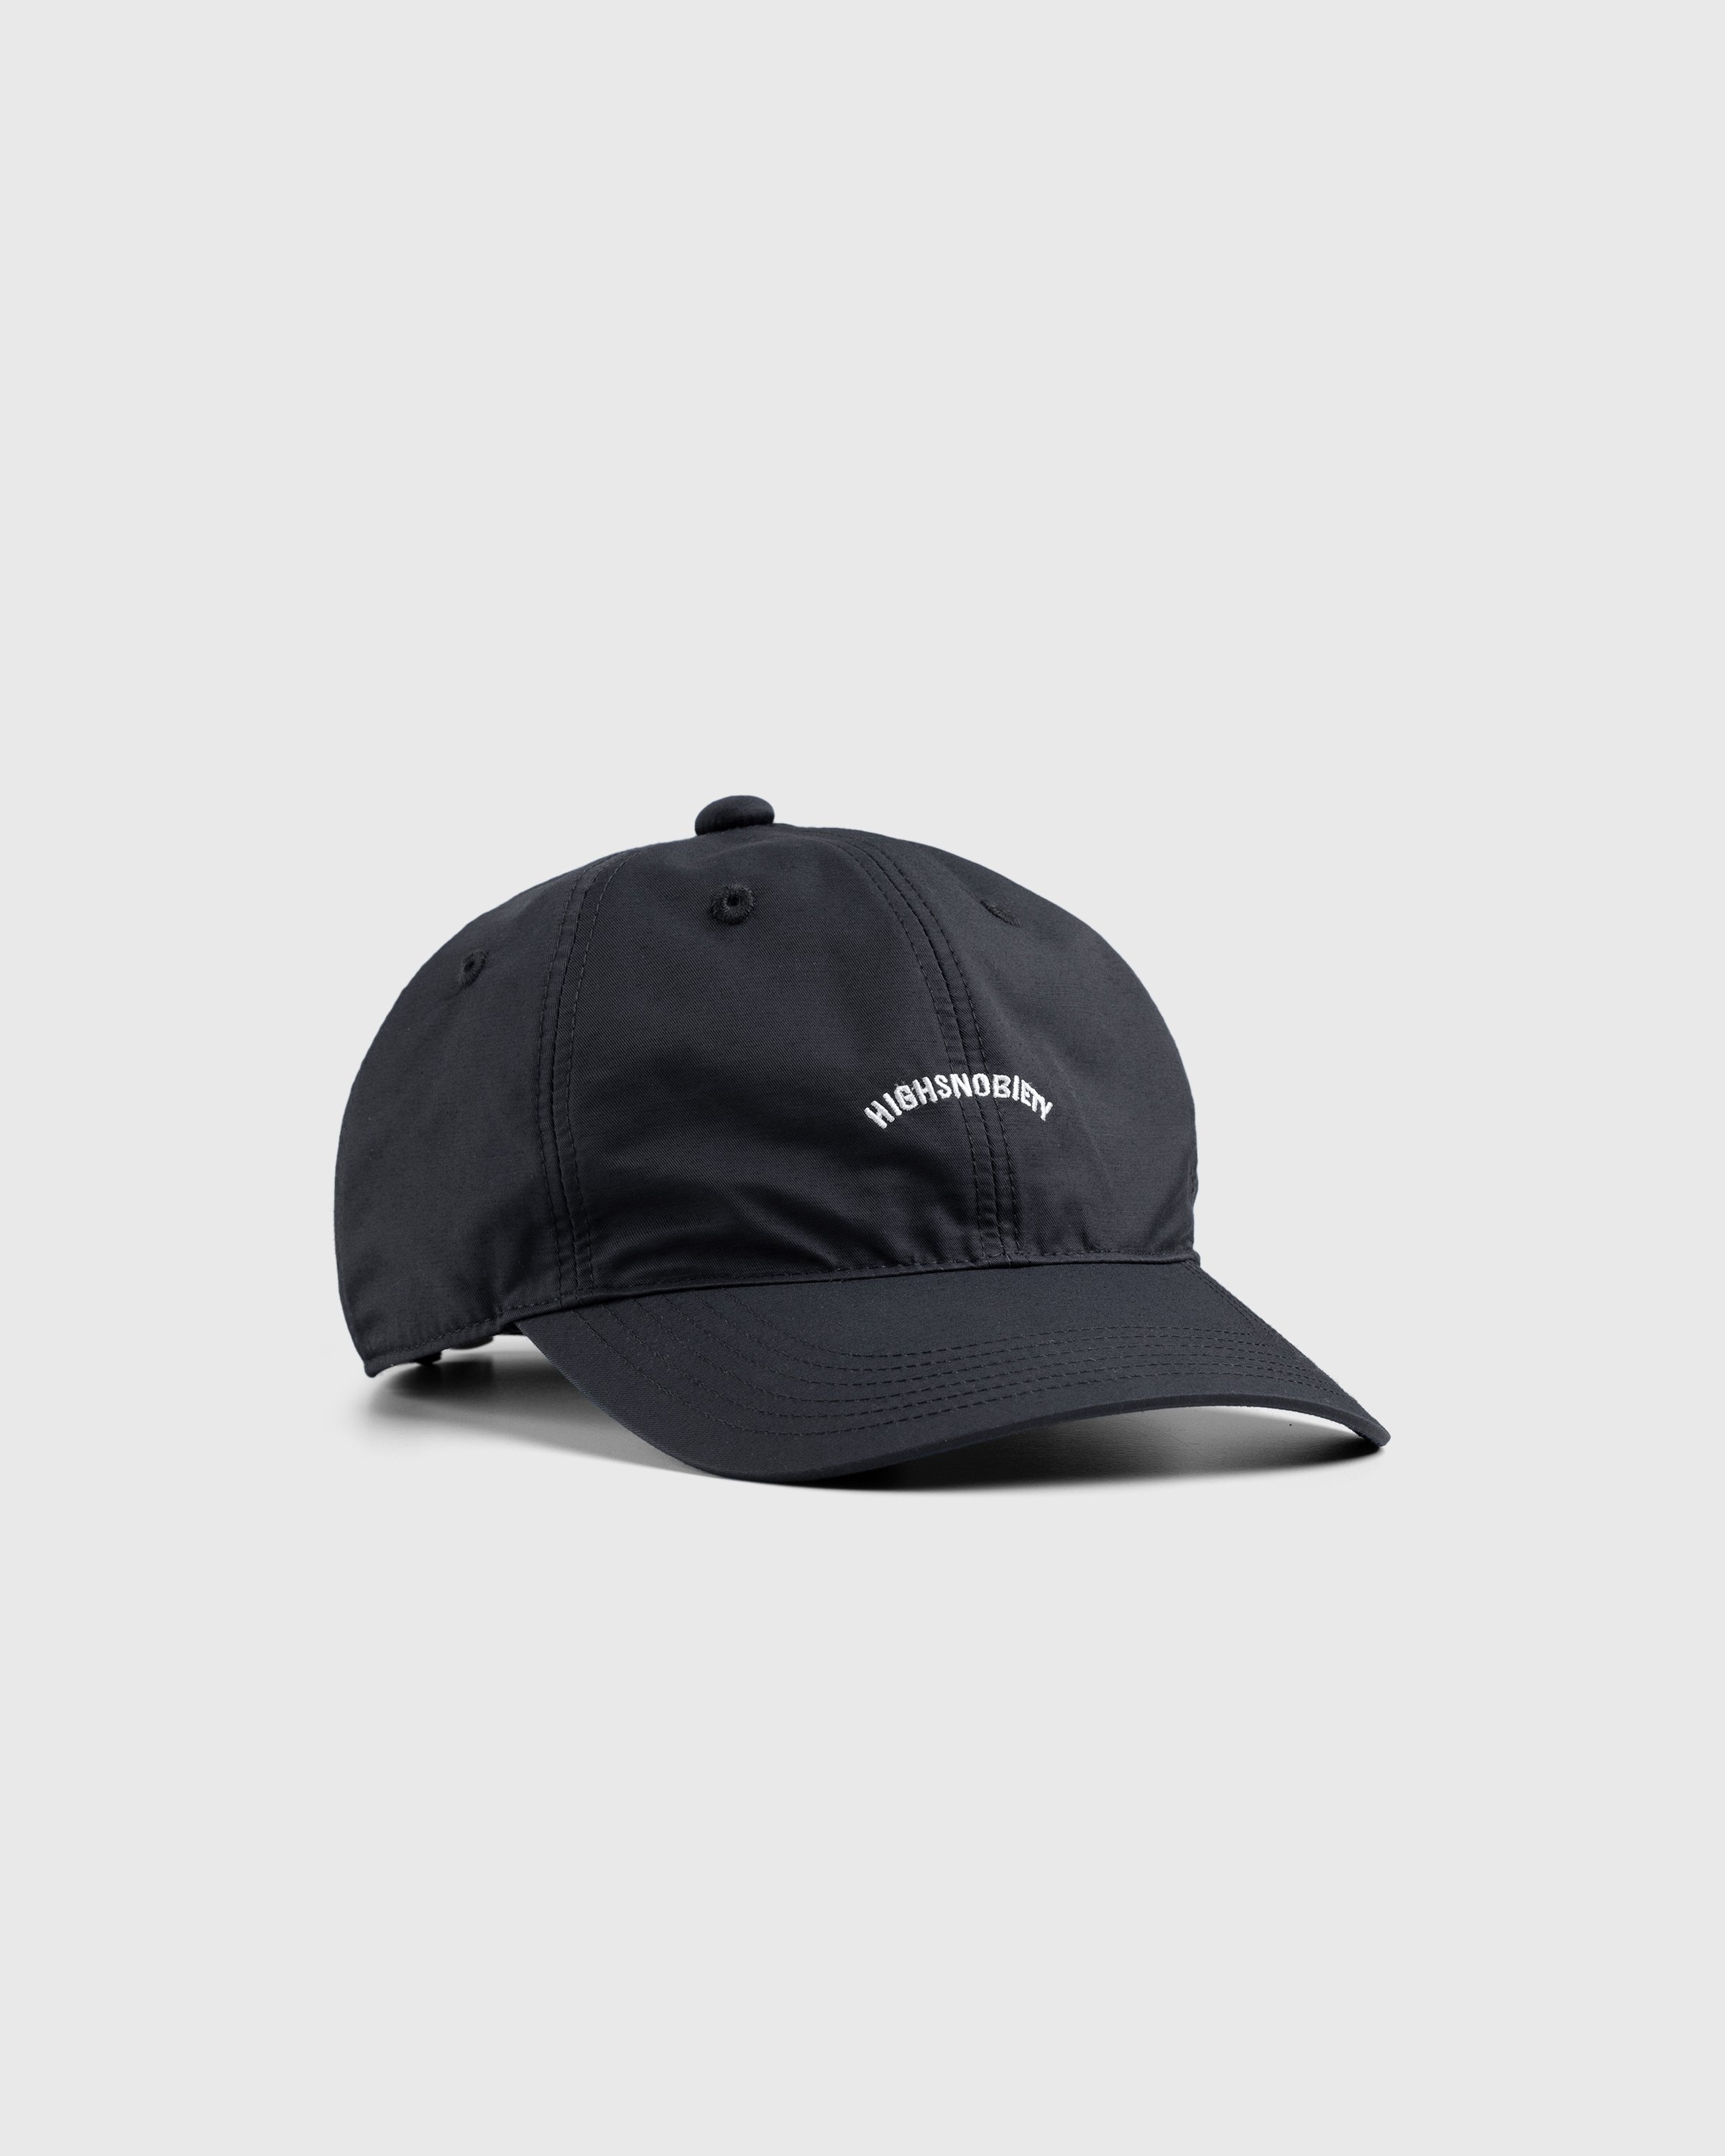 Highsnobiety – Brushed Nylon Logo Cap Black - Caps - Black - Image 1